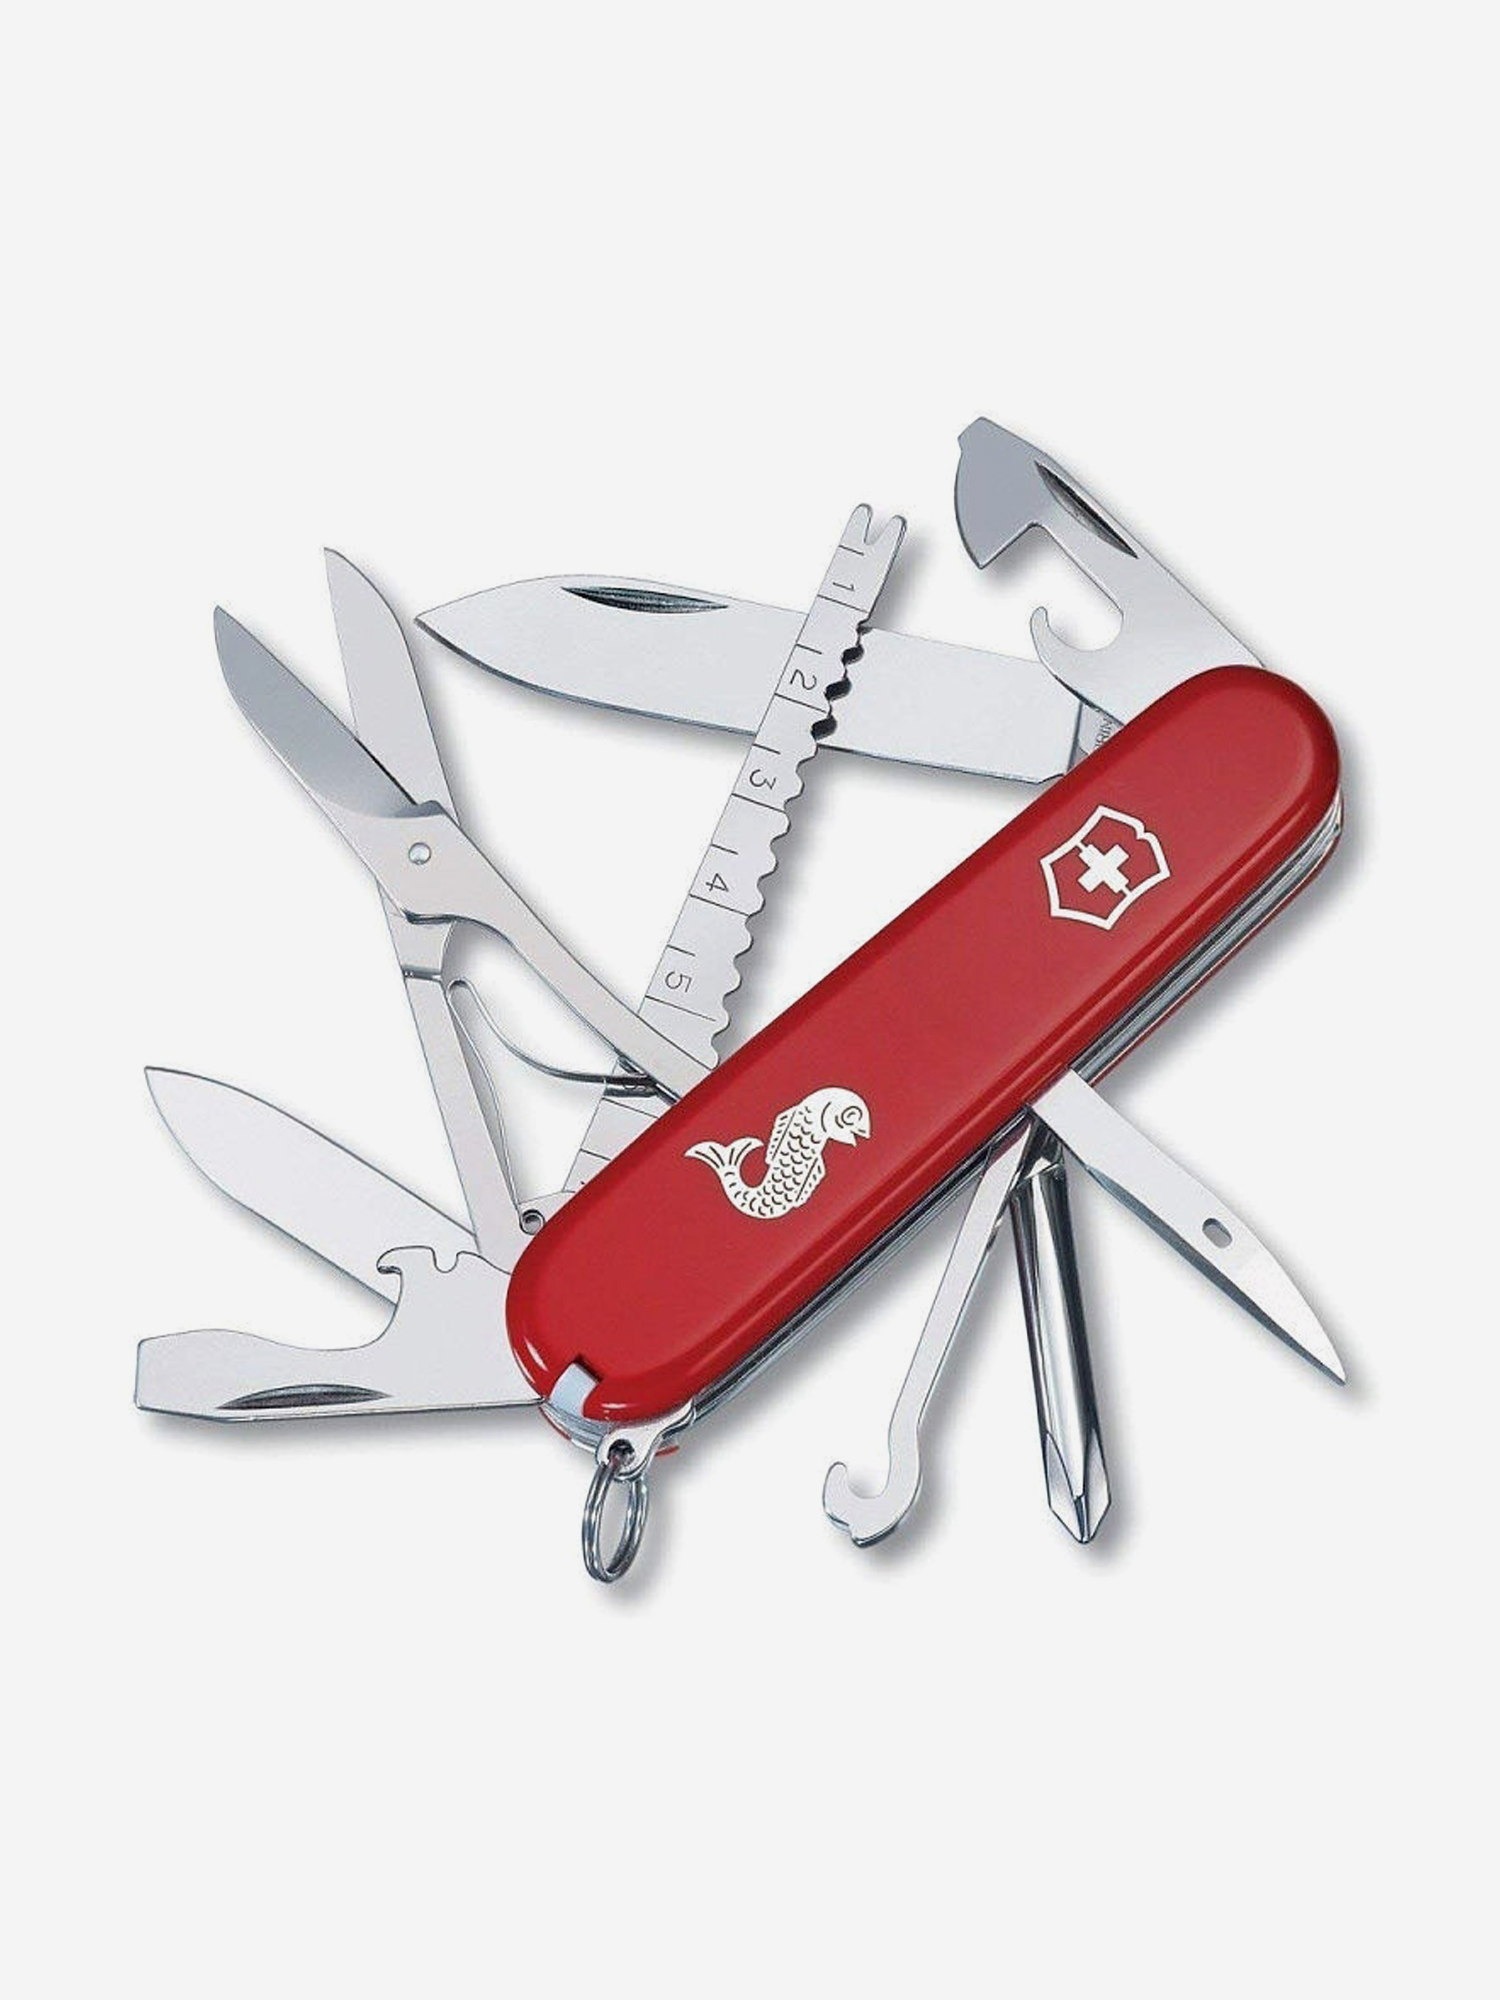 Нож складной Victorinox Fisherman, 91 мм, 18 функций, Красный нож складной victorinox swisschamp 91 мм 33 функции красный